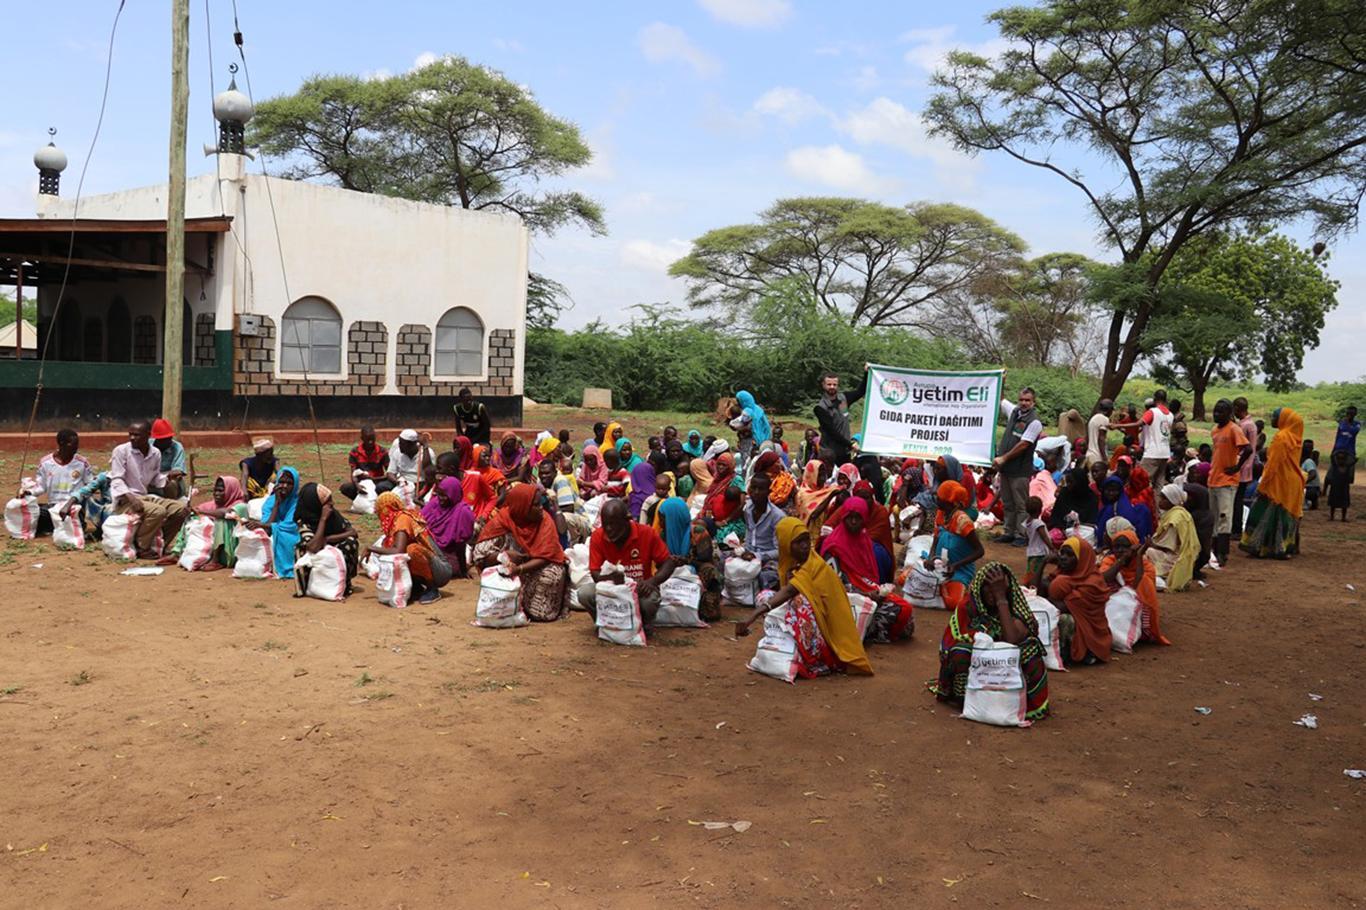 European Yetim Eli distributes food aid in Kenya